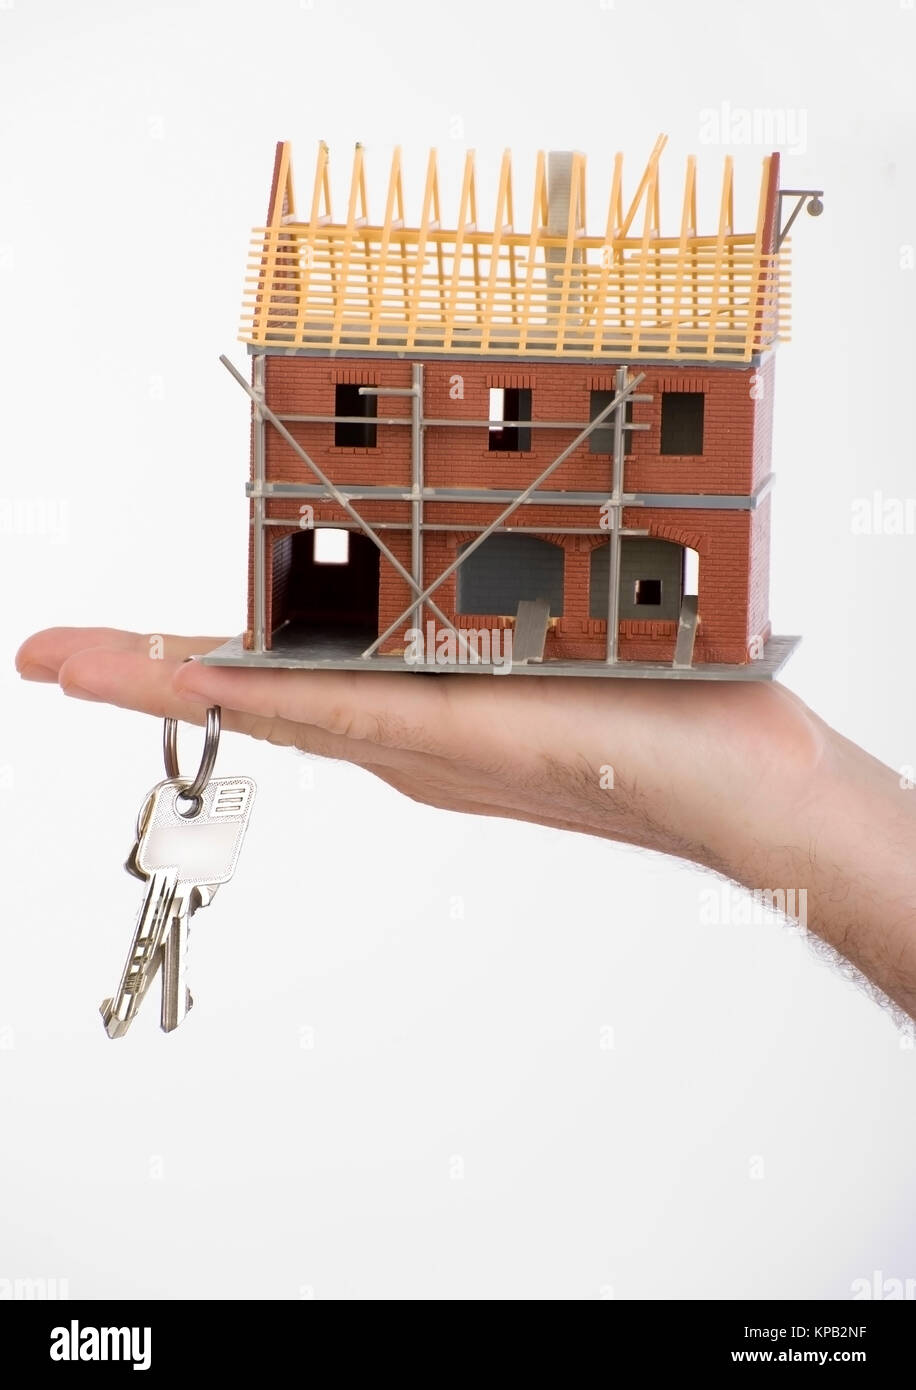 Model release, Rohbau und Schluessel in der Hand, Symbolbild Hausbau - new build house Stock Photo